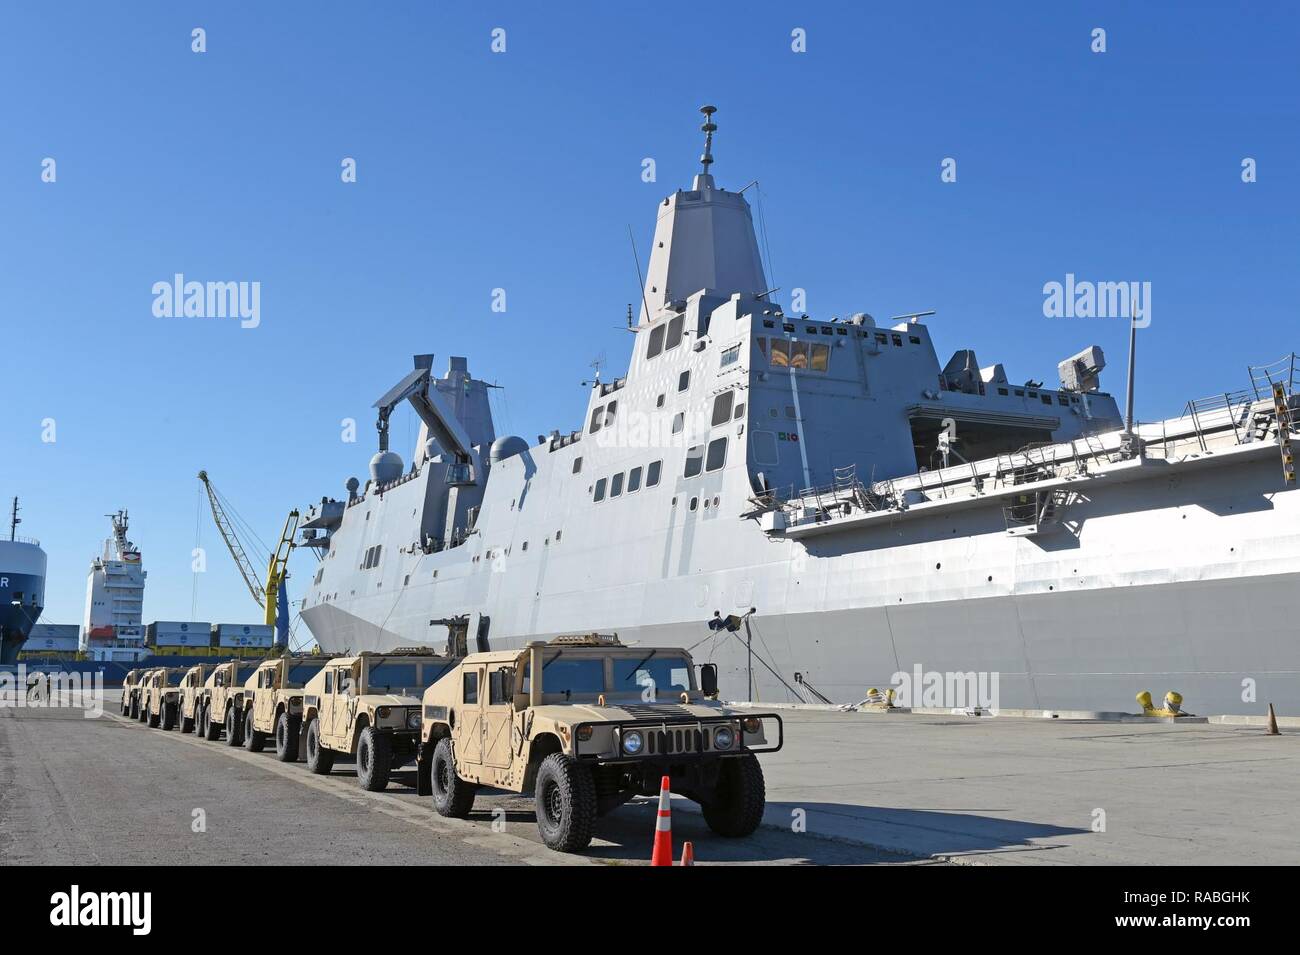 PORT HUENEME, California (Gen. 26, 2017) - Seabees assegnato alla Naval Mobile Battaglione di costruzione (NMCB) 4 park otto humvees sulla base navale Ventura County Port Hueneme pier accanto al trasporto anfibio dock nave USS San Diego (LPD 22) dopo aver completato il caricamento di esercizio (LOADEX), 26 genn. Il LOADEX è progettato per la formazione di marinai con risposta rapida funzionalità per supportare gli sforzi di recupero e di assistere le autorità locali seguenti catastrofi naturali e provocate dall'uomo. Foto Stock